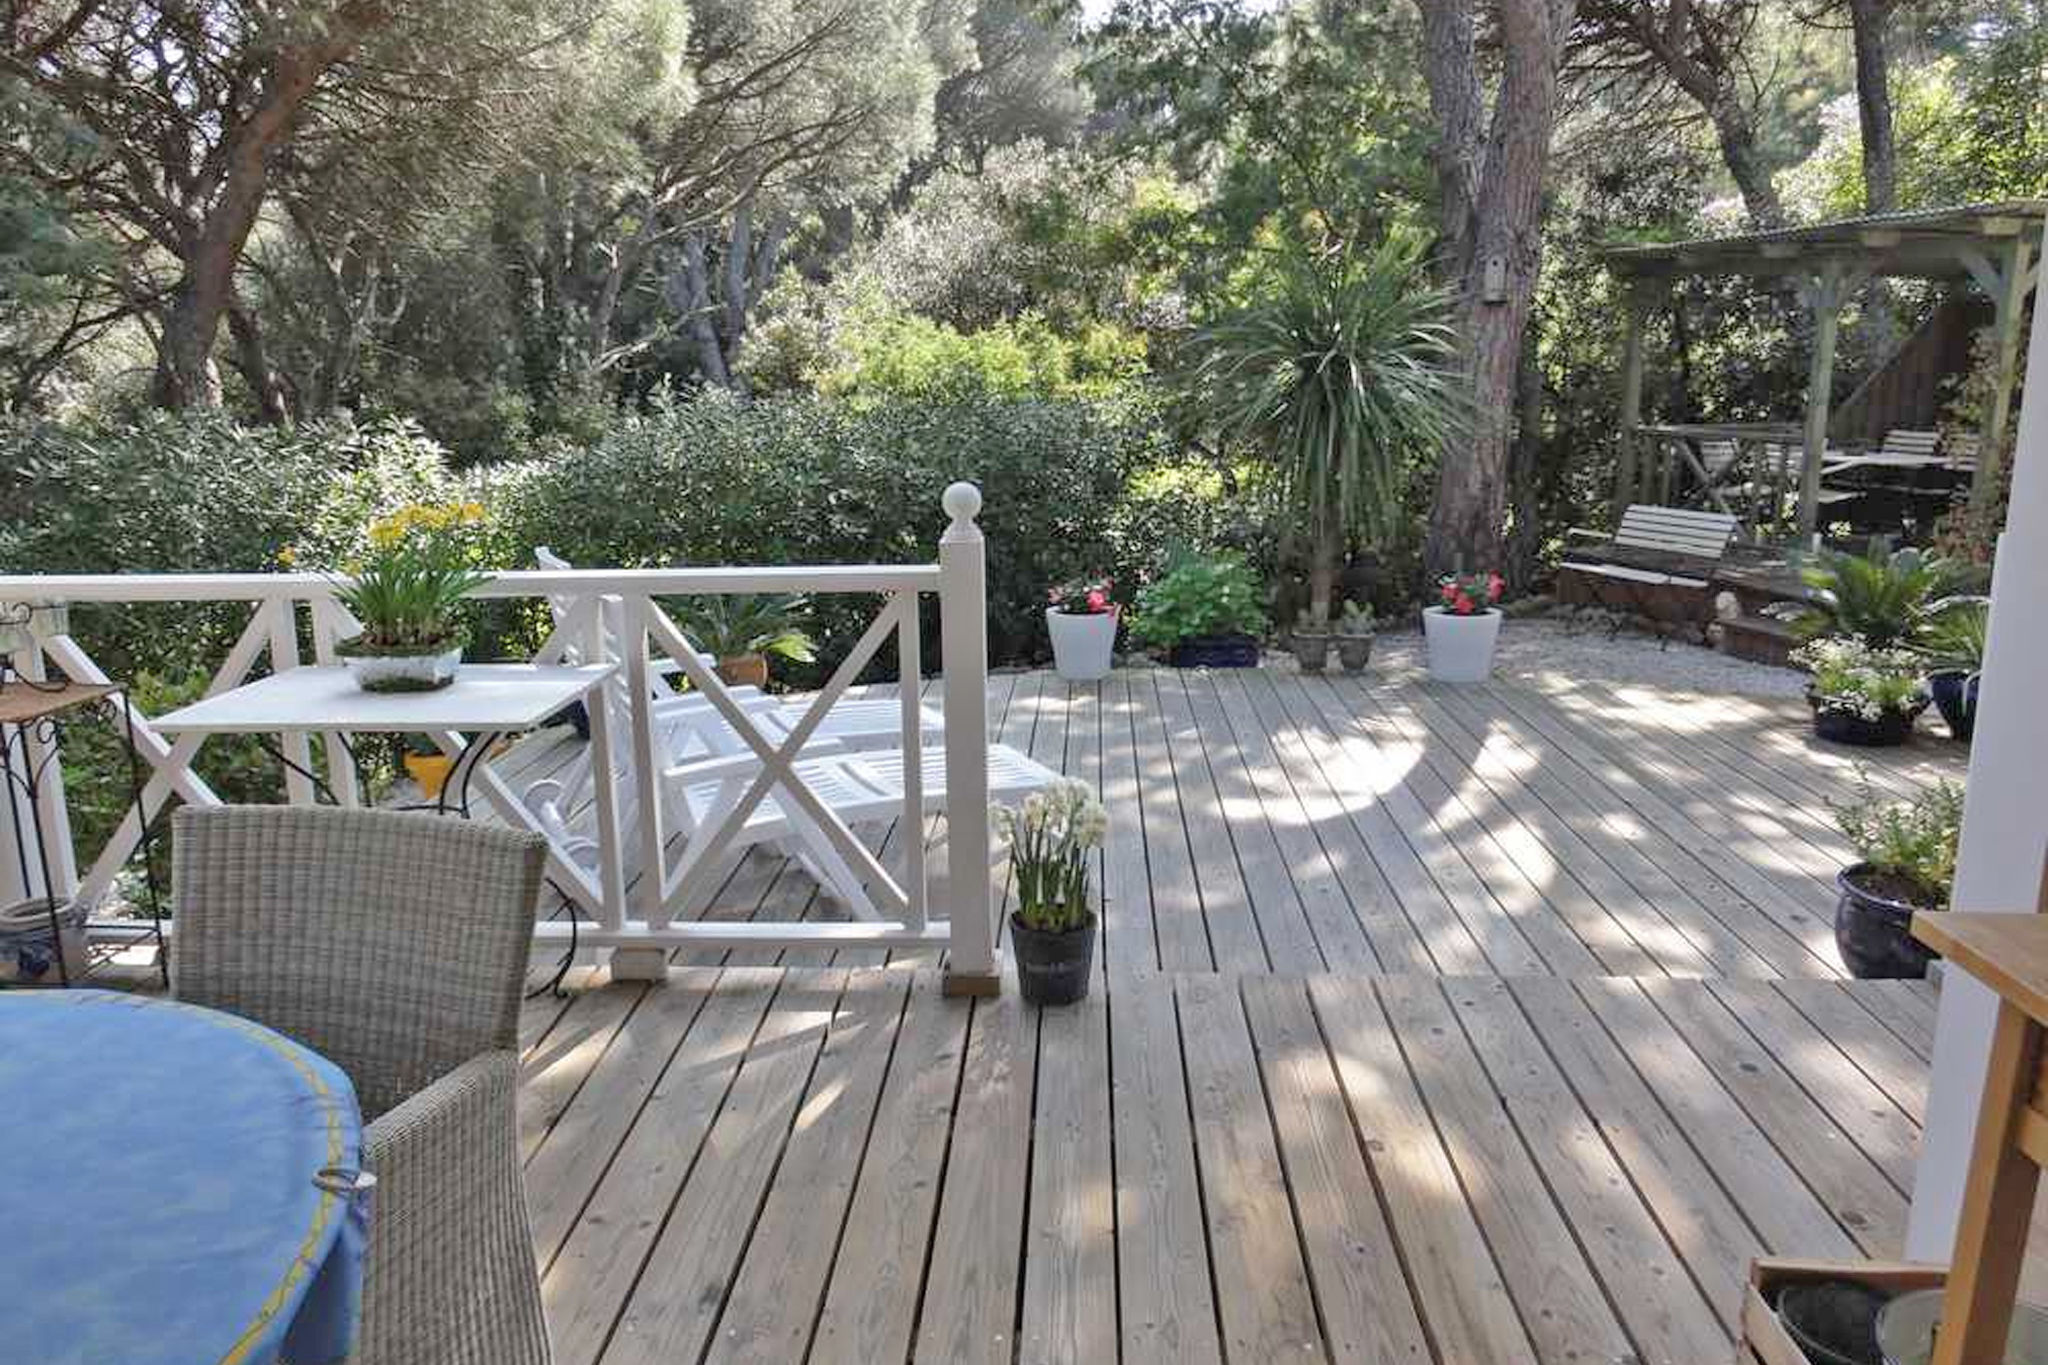 Provençaals chalet met houten veranda en tuin nabij de stranden van St. Tropez